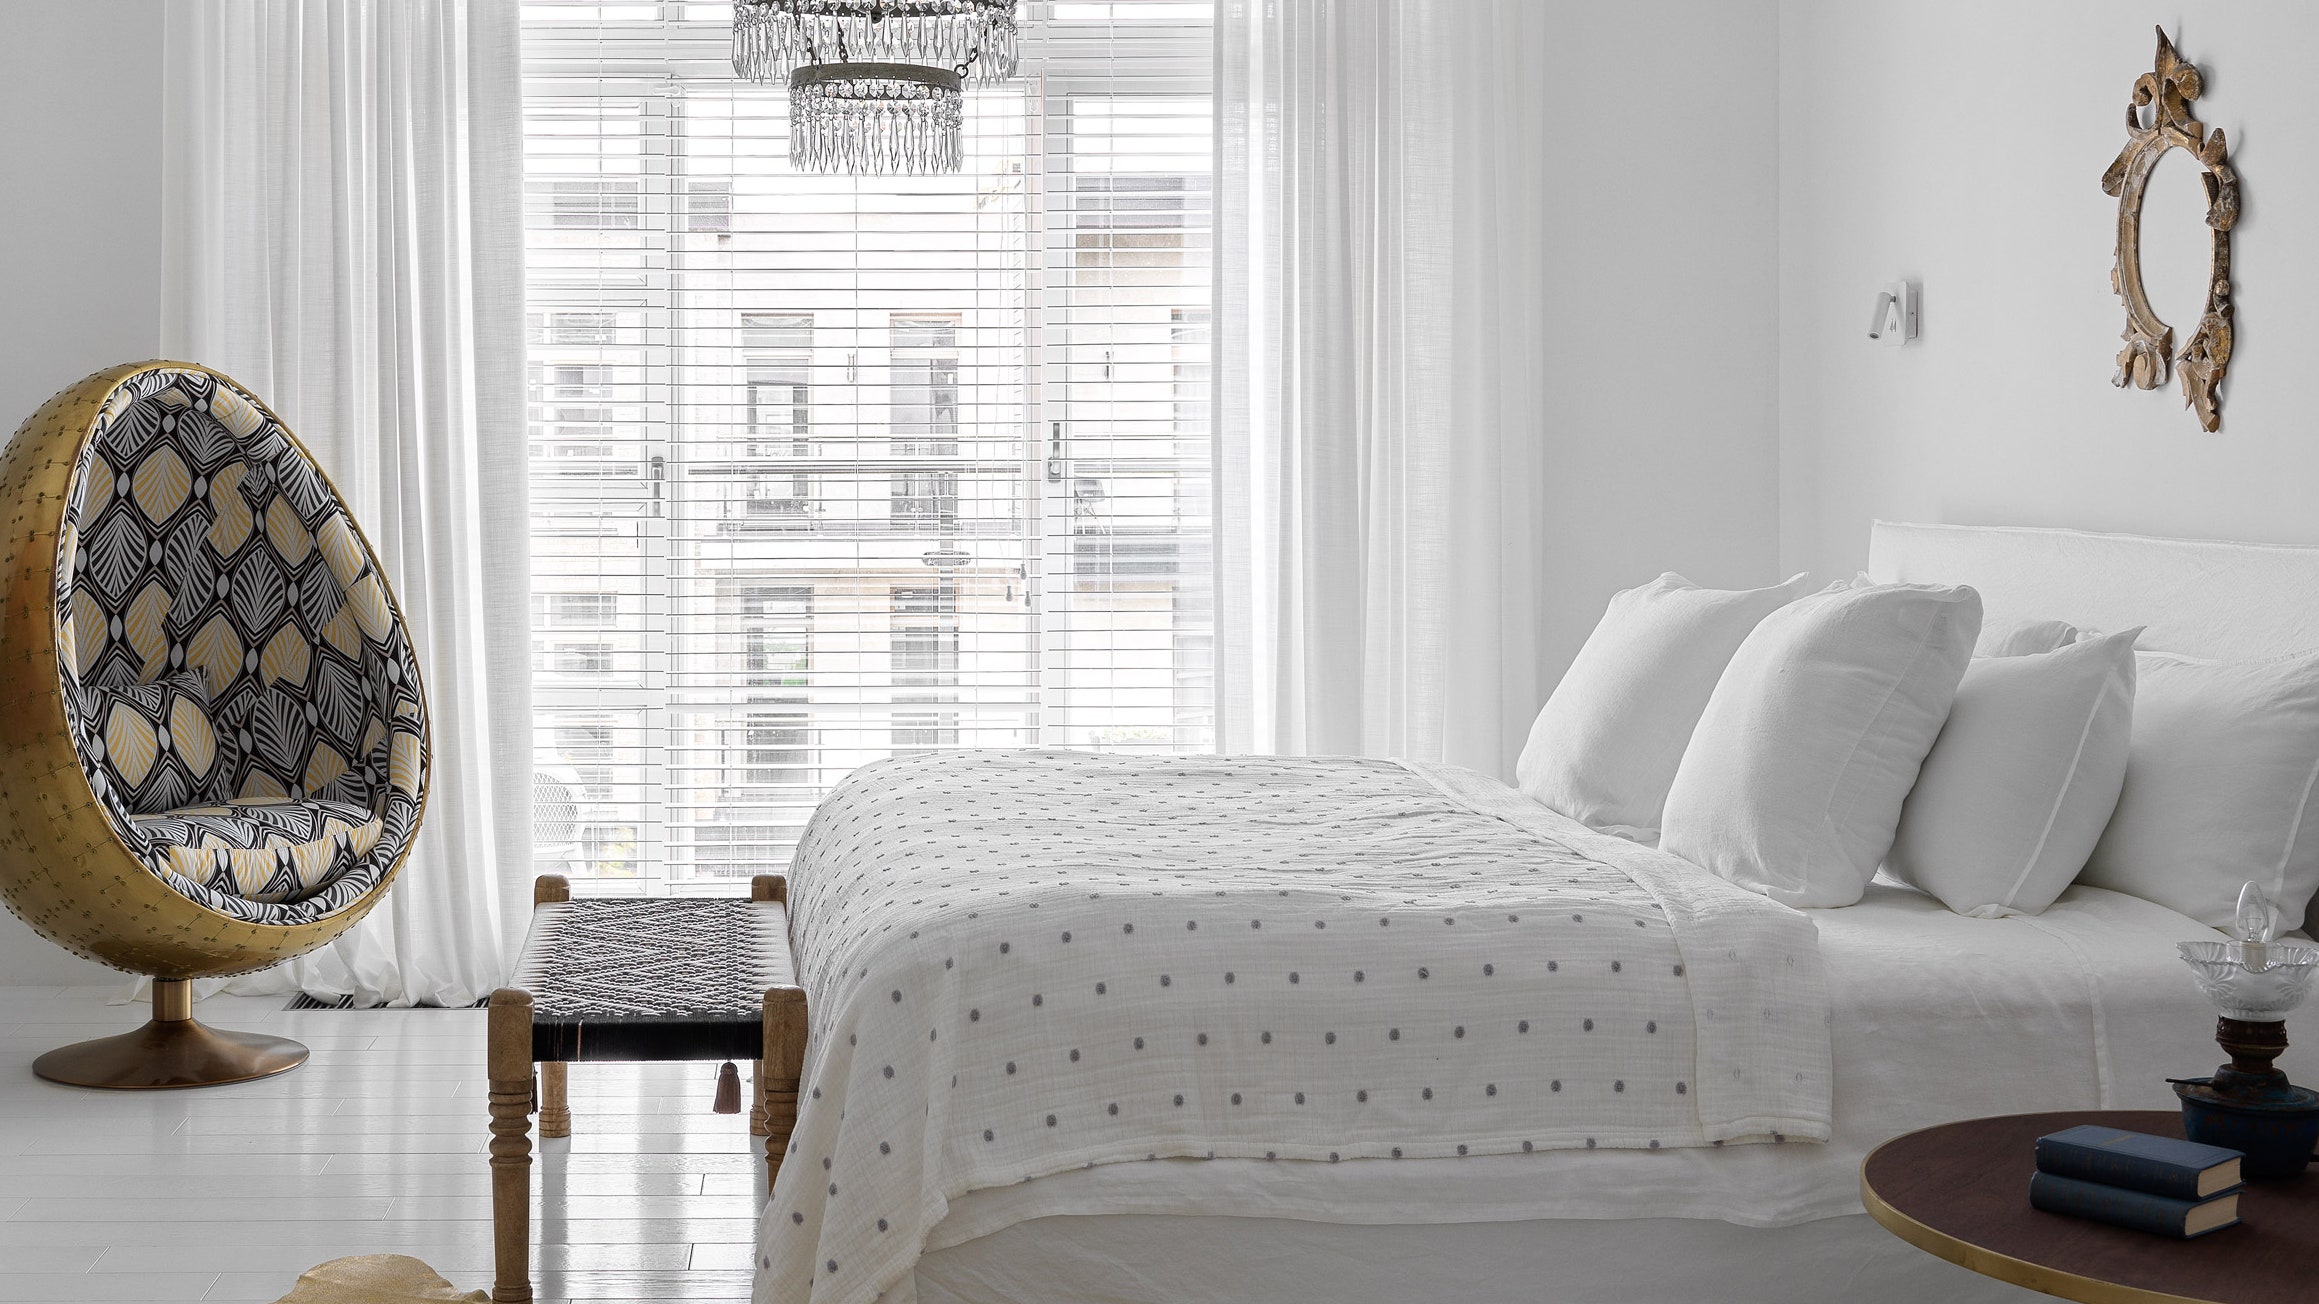 Идеи дизайн – проектов интерьера спальни: фото красивых спальных комнат со стильным оформлением